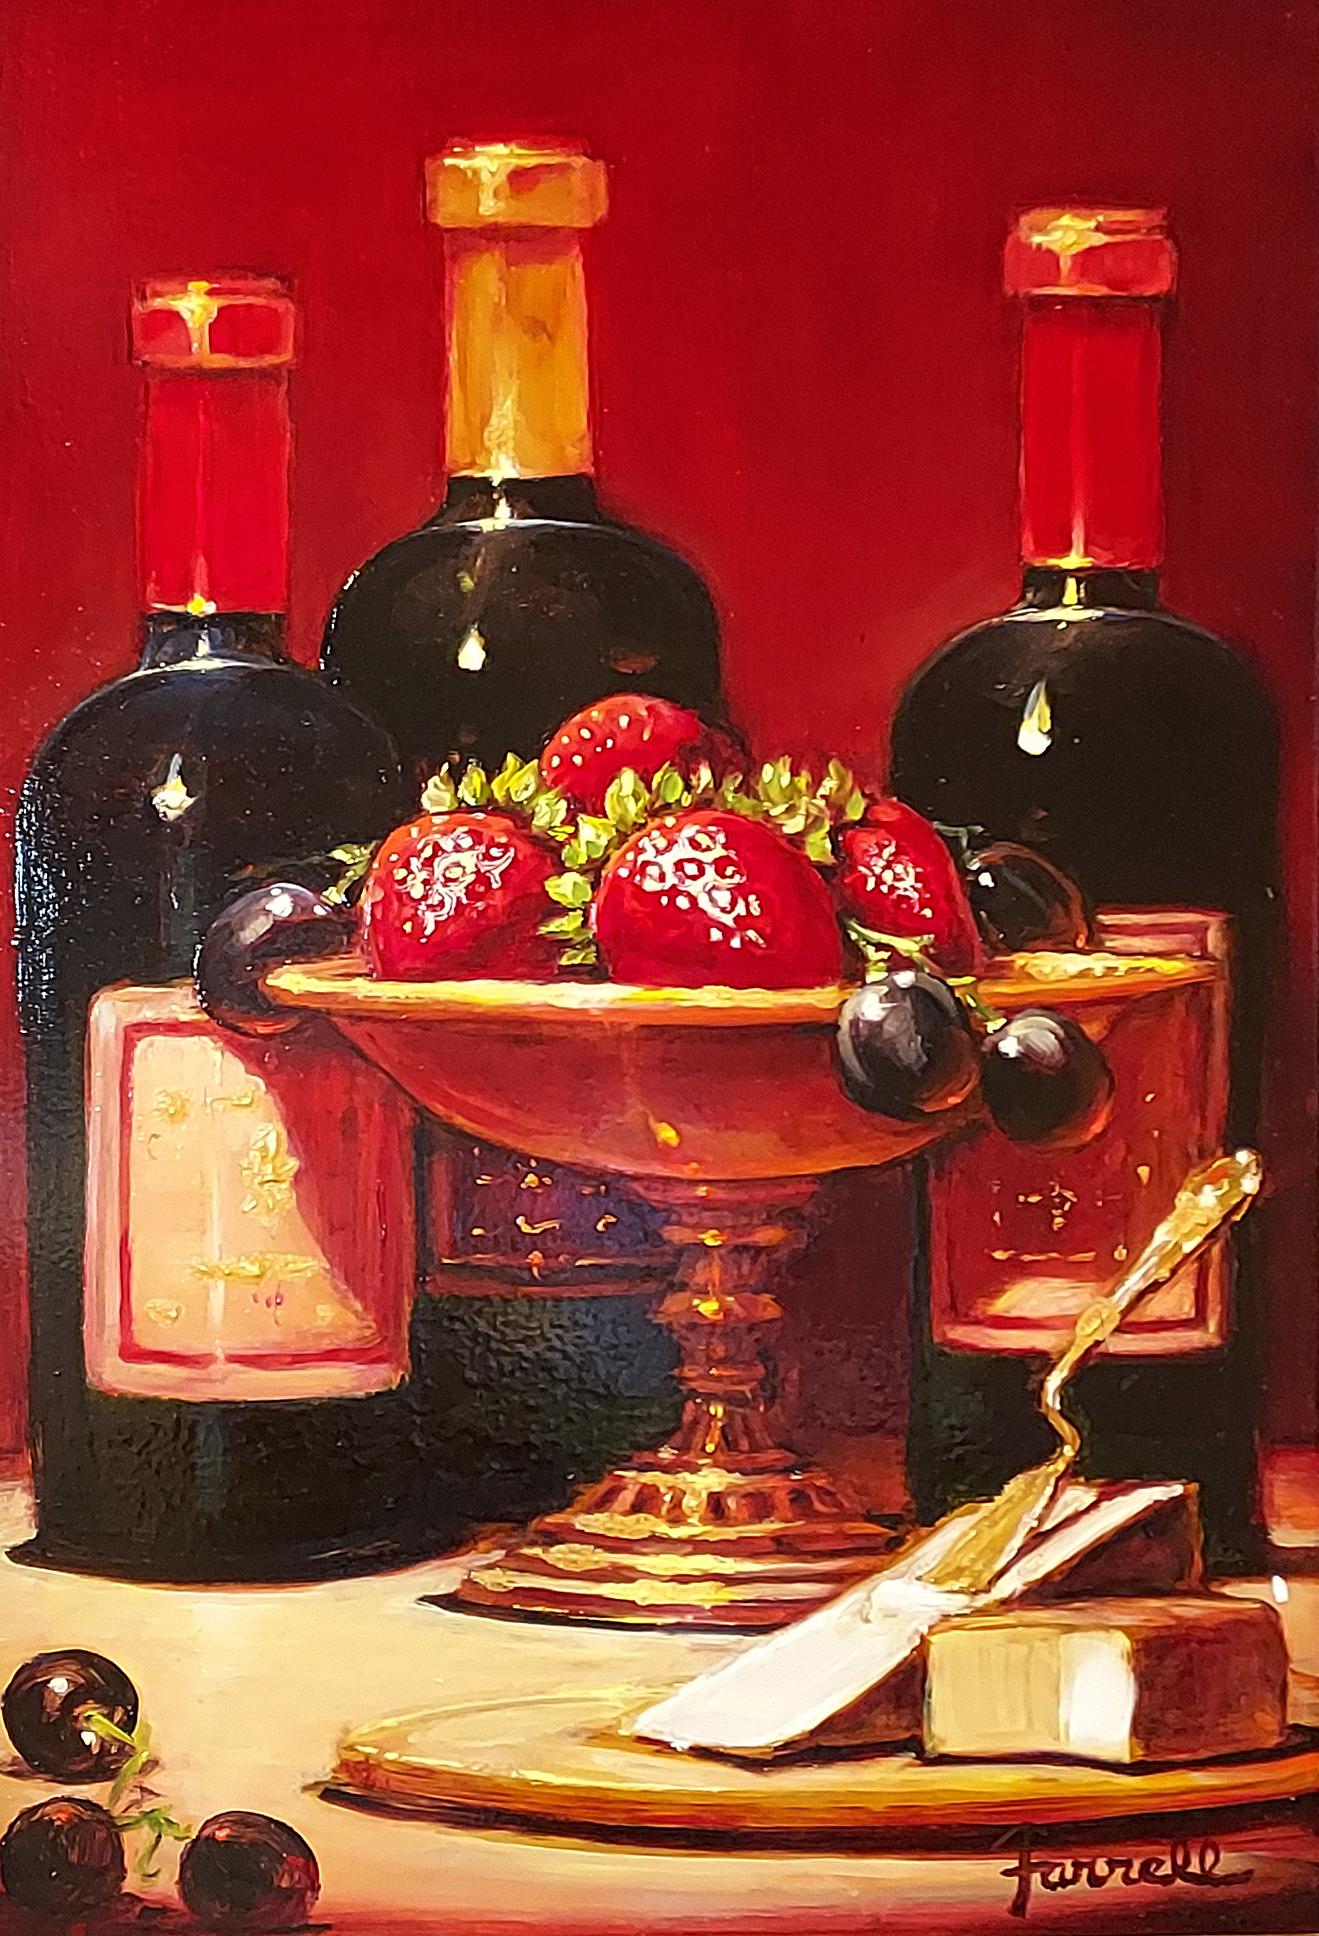 "Wein und Käse mit Erdbeeren" ist ein 15x10 großes Ölgemälde auf Leinwand des Künstlers Sean Farrell, das eine große Auswahl an Wein und Obst zeigt. Ein polierter Kelch mit reifen Erdbeeren und Weintrauben steht neben einer hölzernen Käseplatte.  In